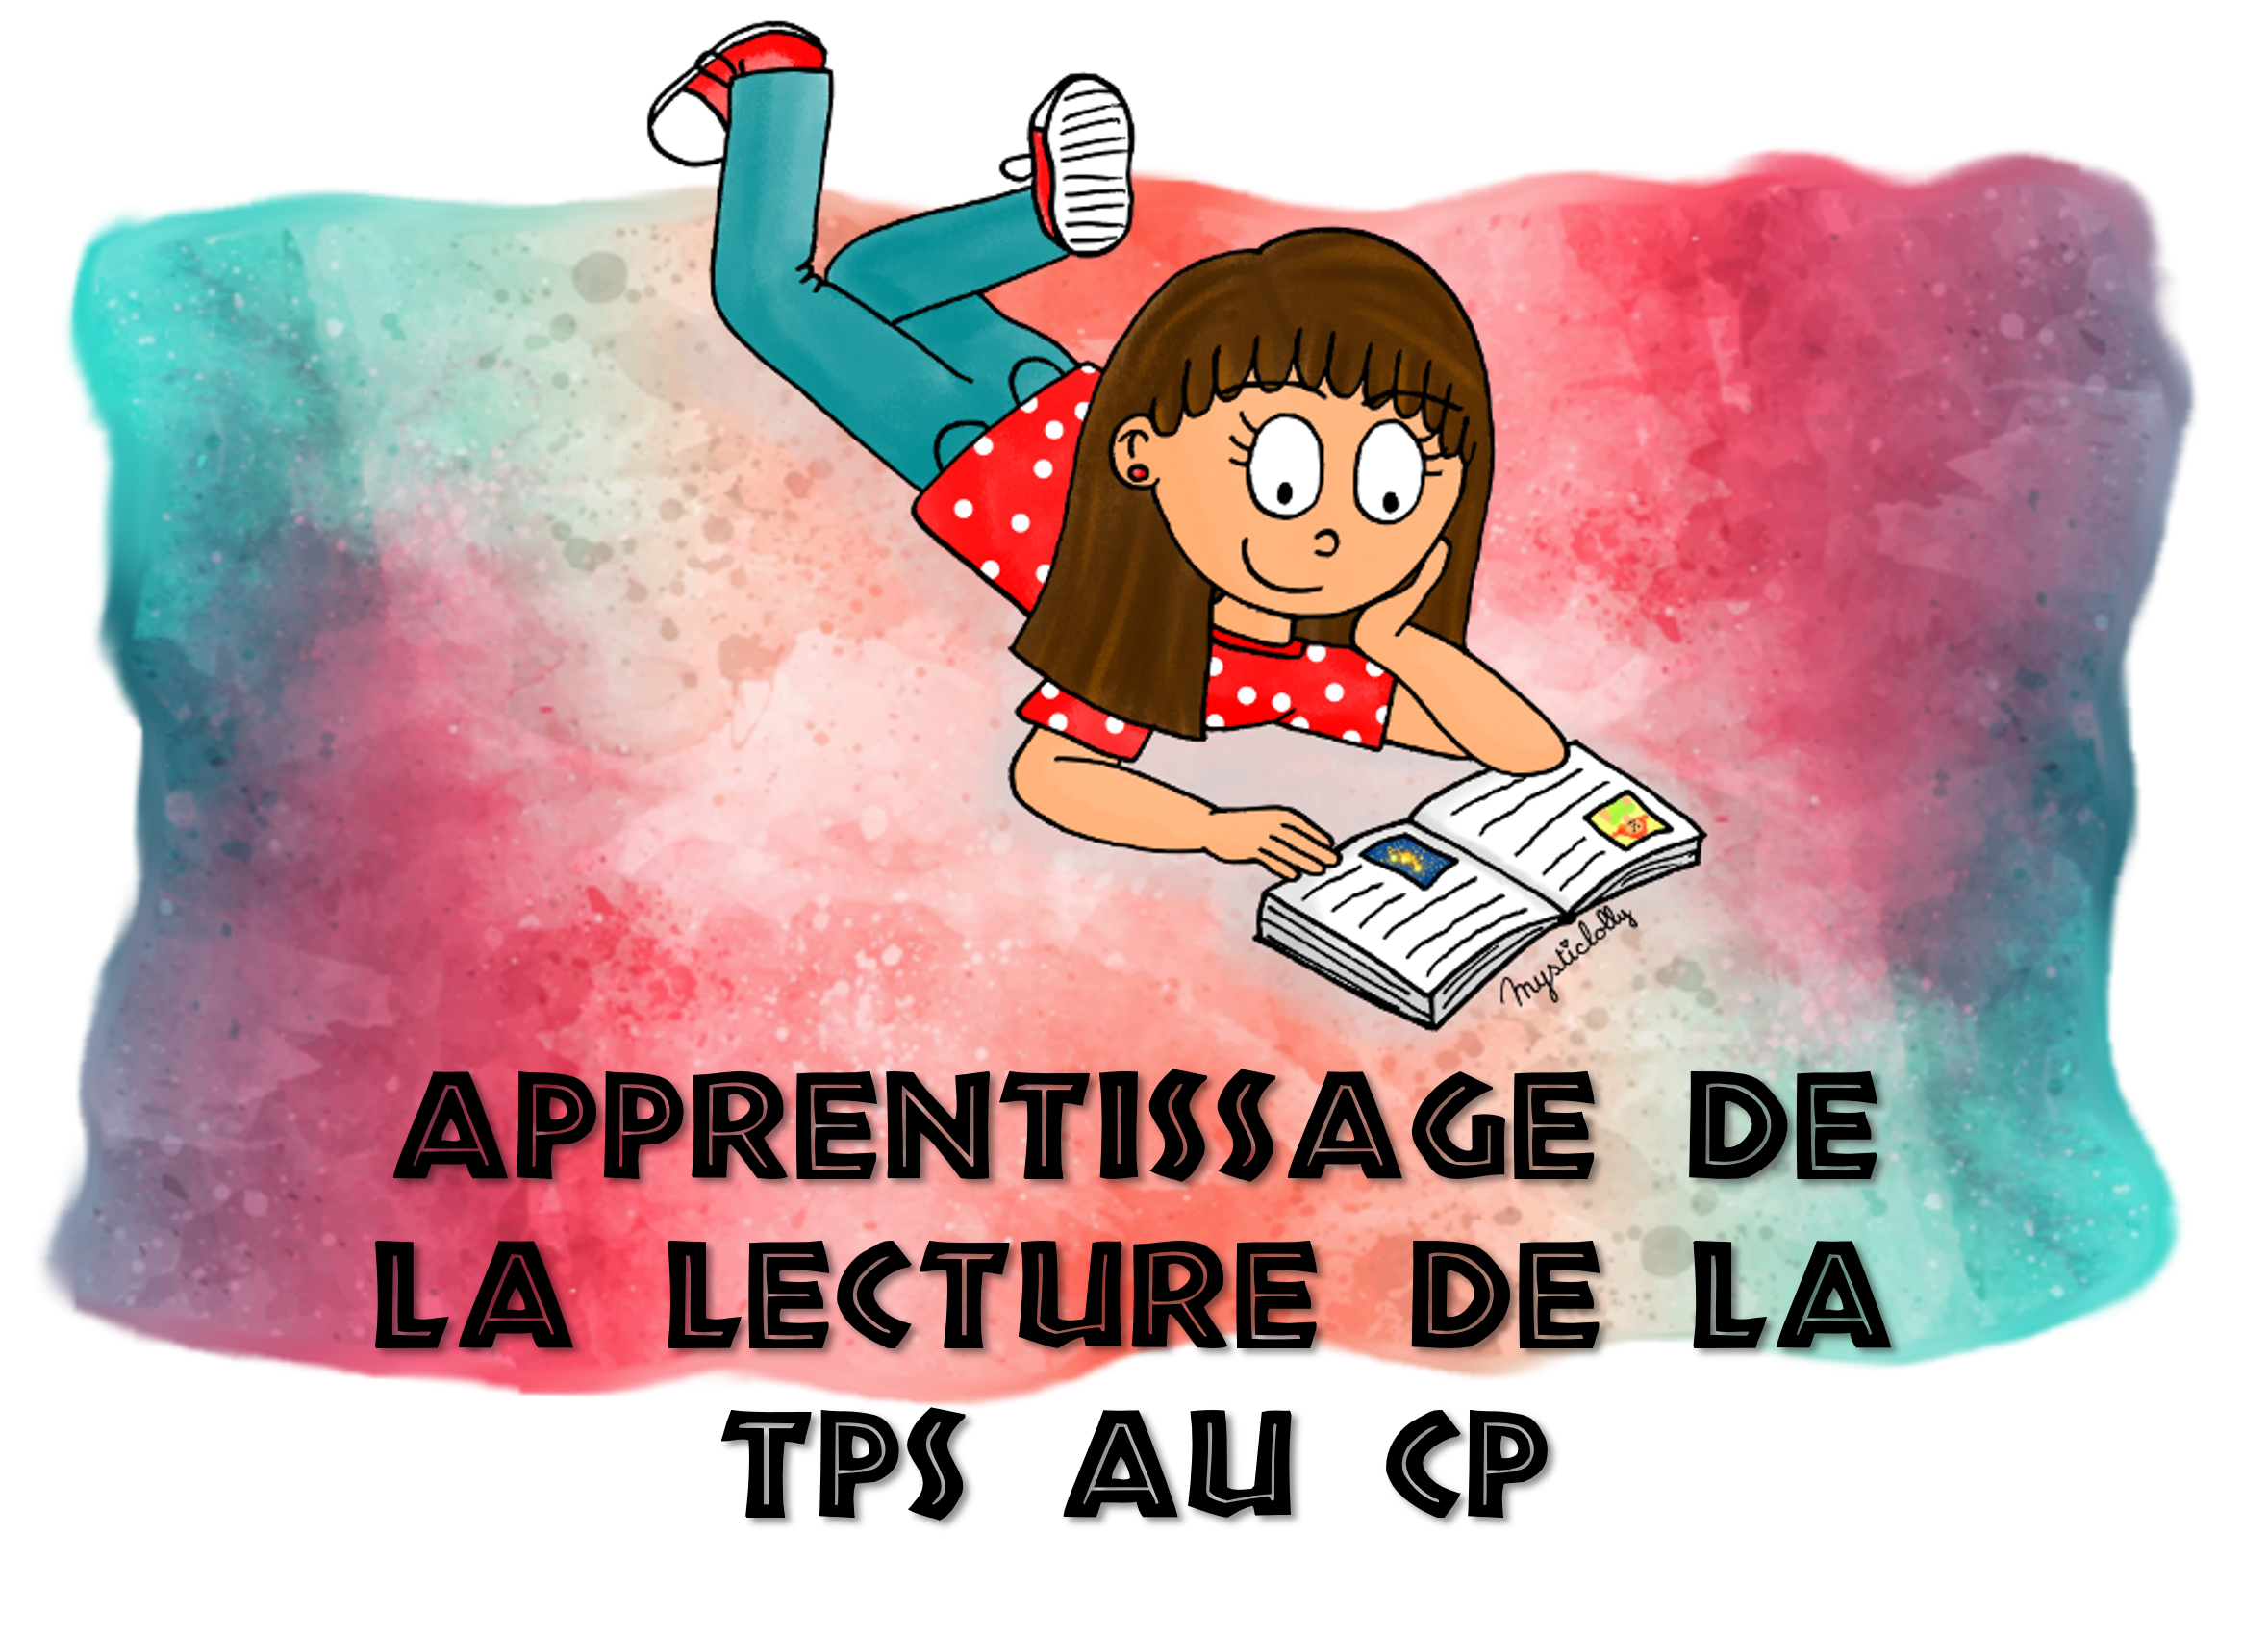 Céline Alvarez, star de la pédagogie alternative, lance des kits pour  apprendre à lire - Le Parisien